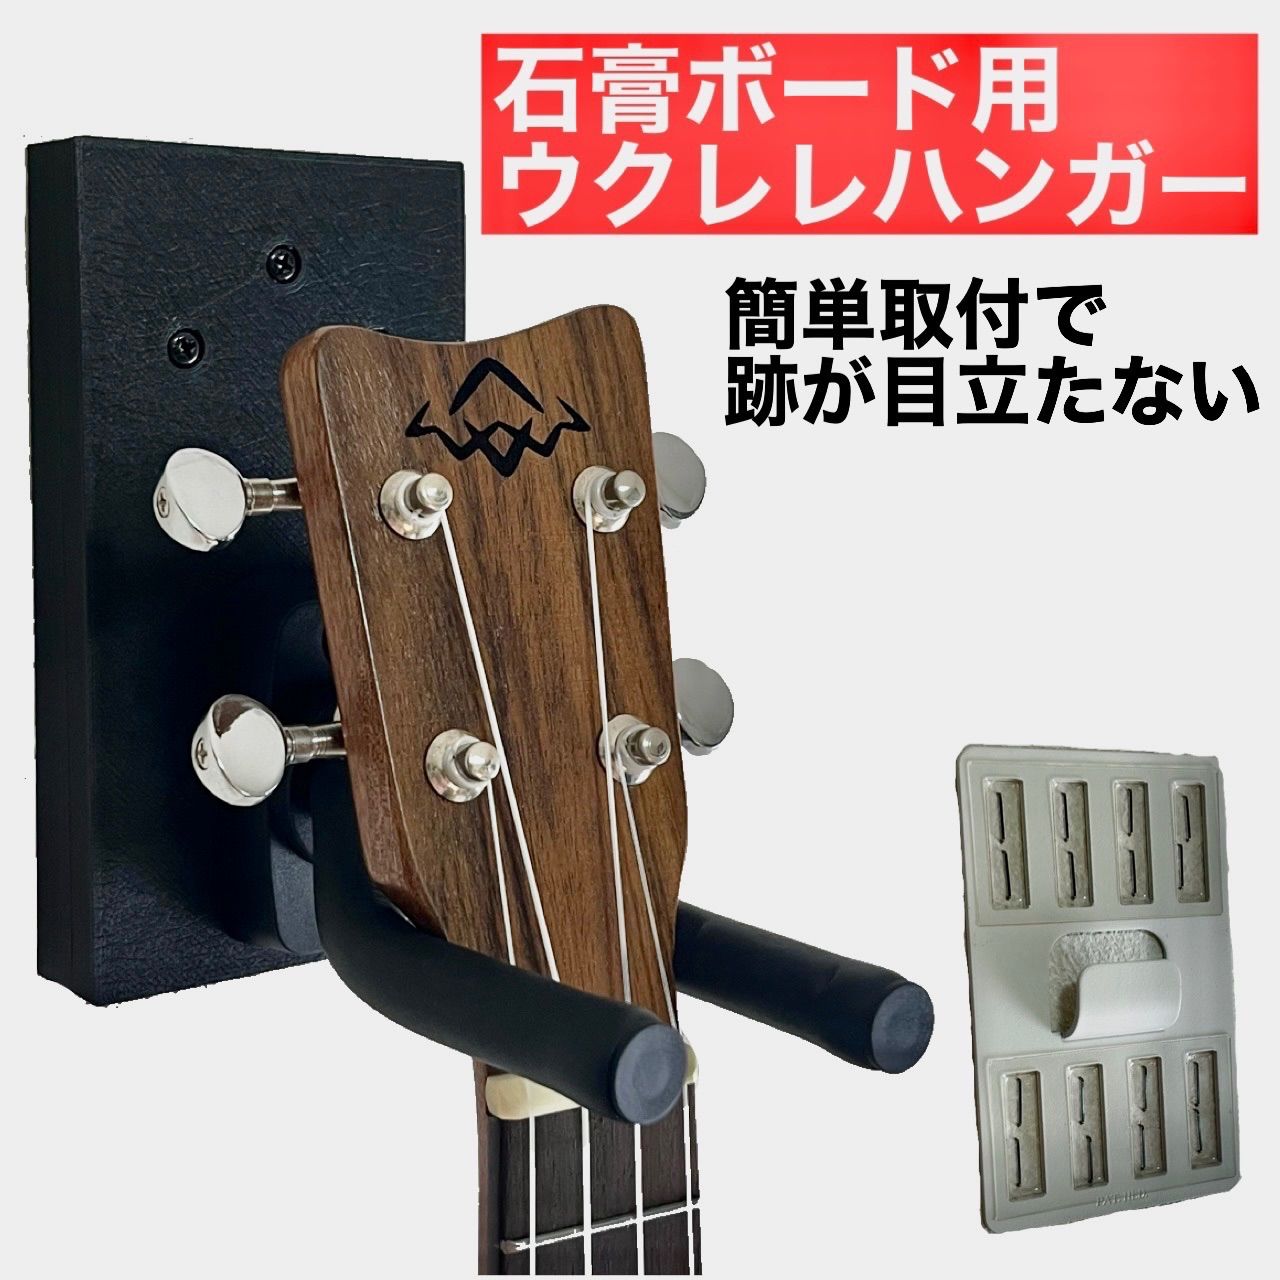 KC ギターハンガー用 カバー GS-103BS x 50個セット - 4